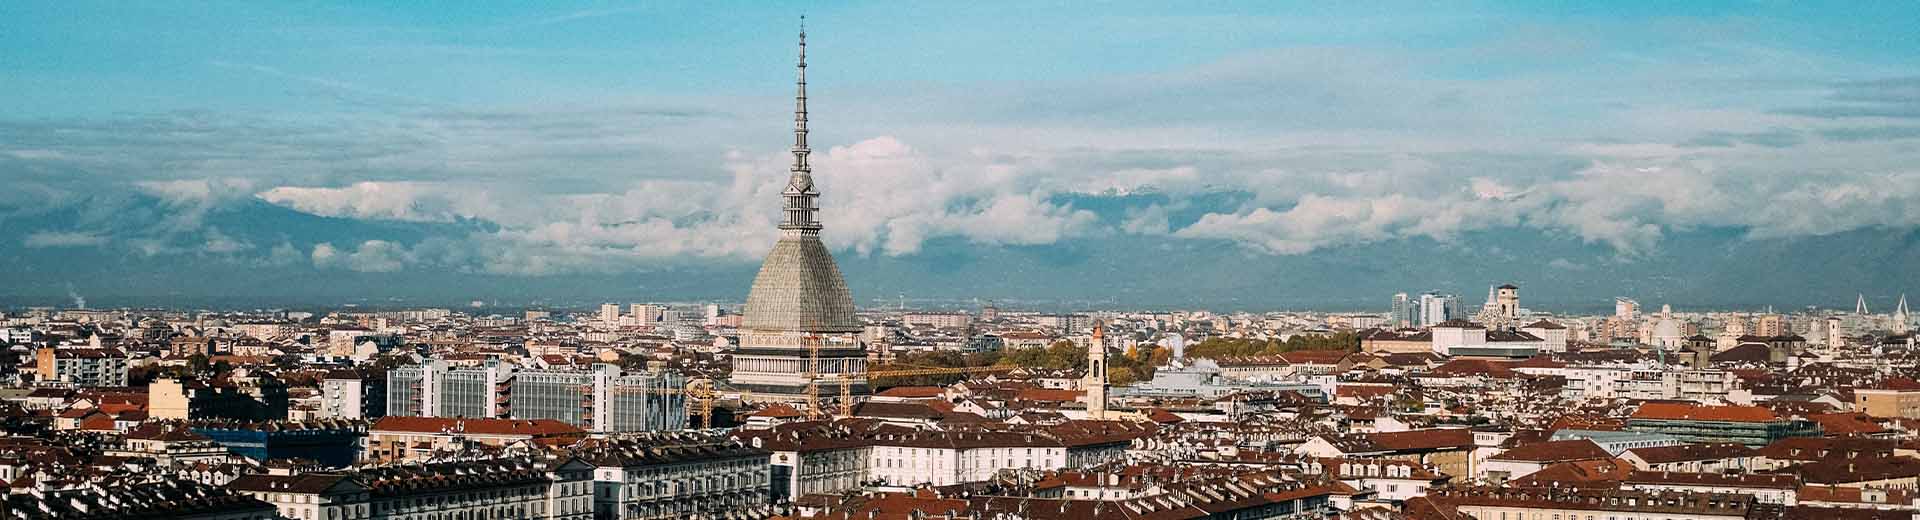 Schöne Stadt Turin an einem klaren Sommertag. Kathedralen und Kirchenstätten sind reichlich vorhanden.